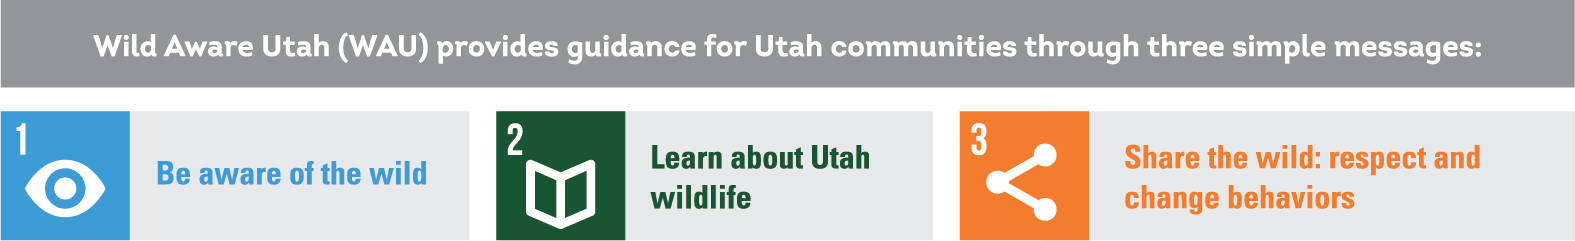 Guidlins for Wild Aware Utah